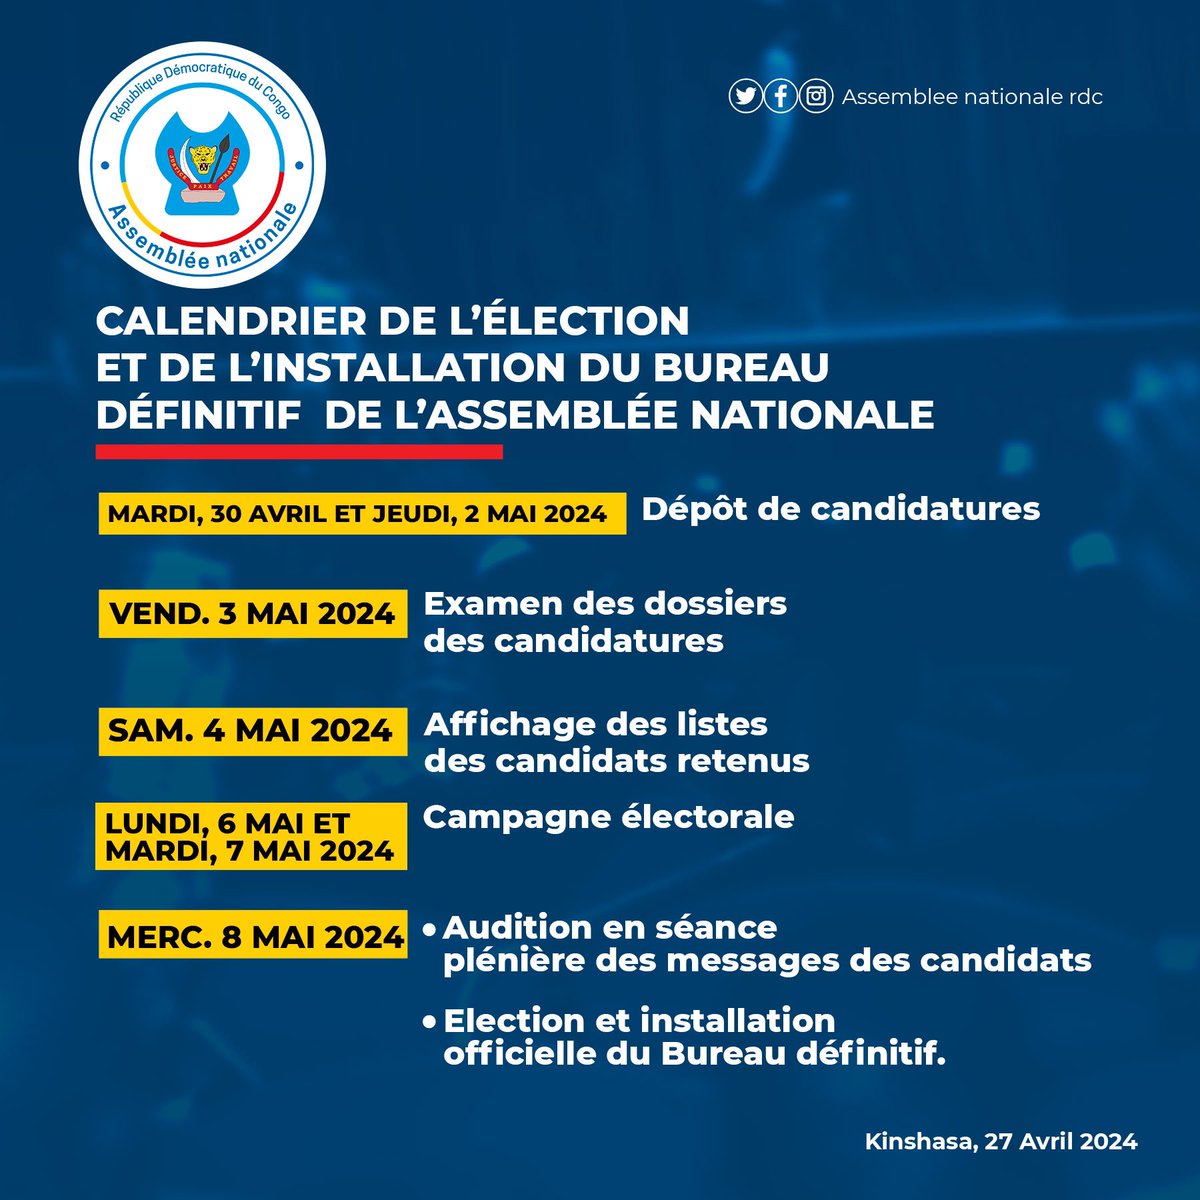 #AnnonceOfficielle | 27.04.2024 Voici le calendrier de l’élection et de l’installation du Bureau définitif de l’Assemblée nationale. —